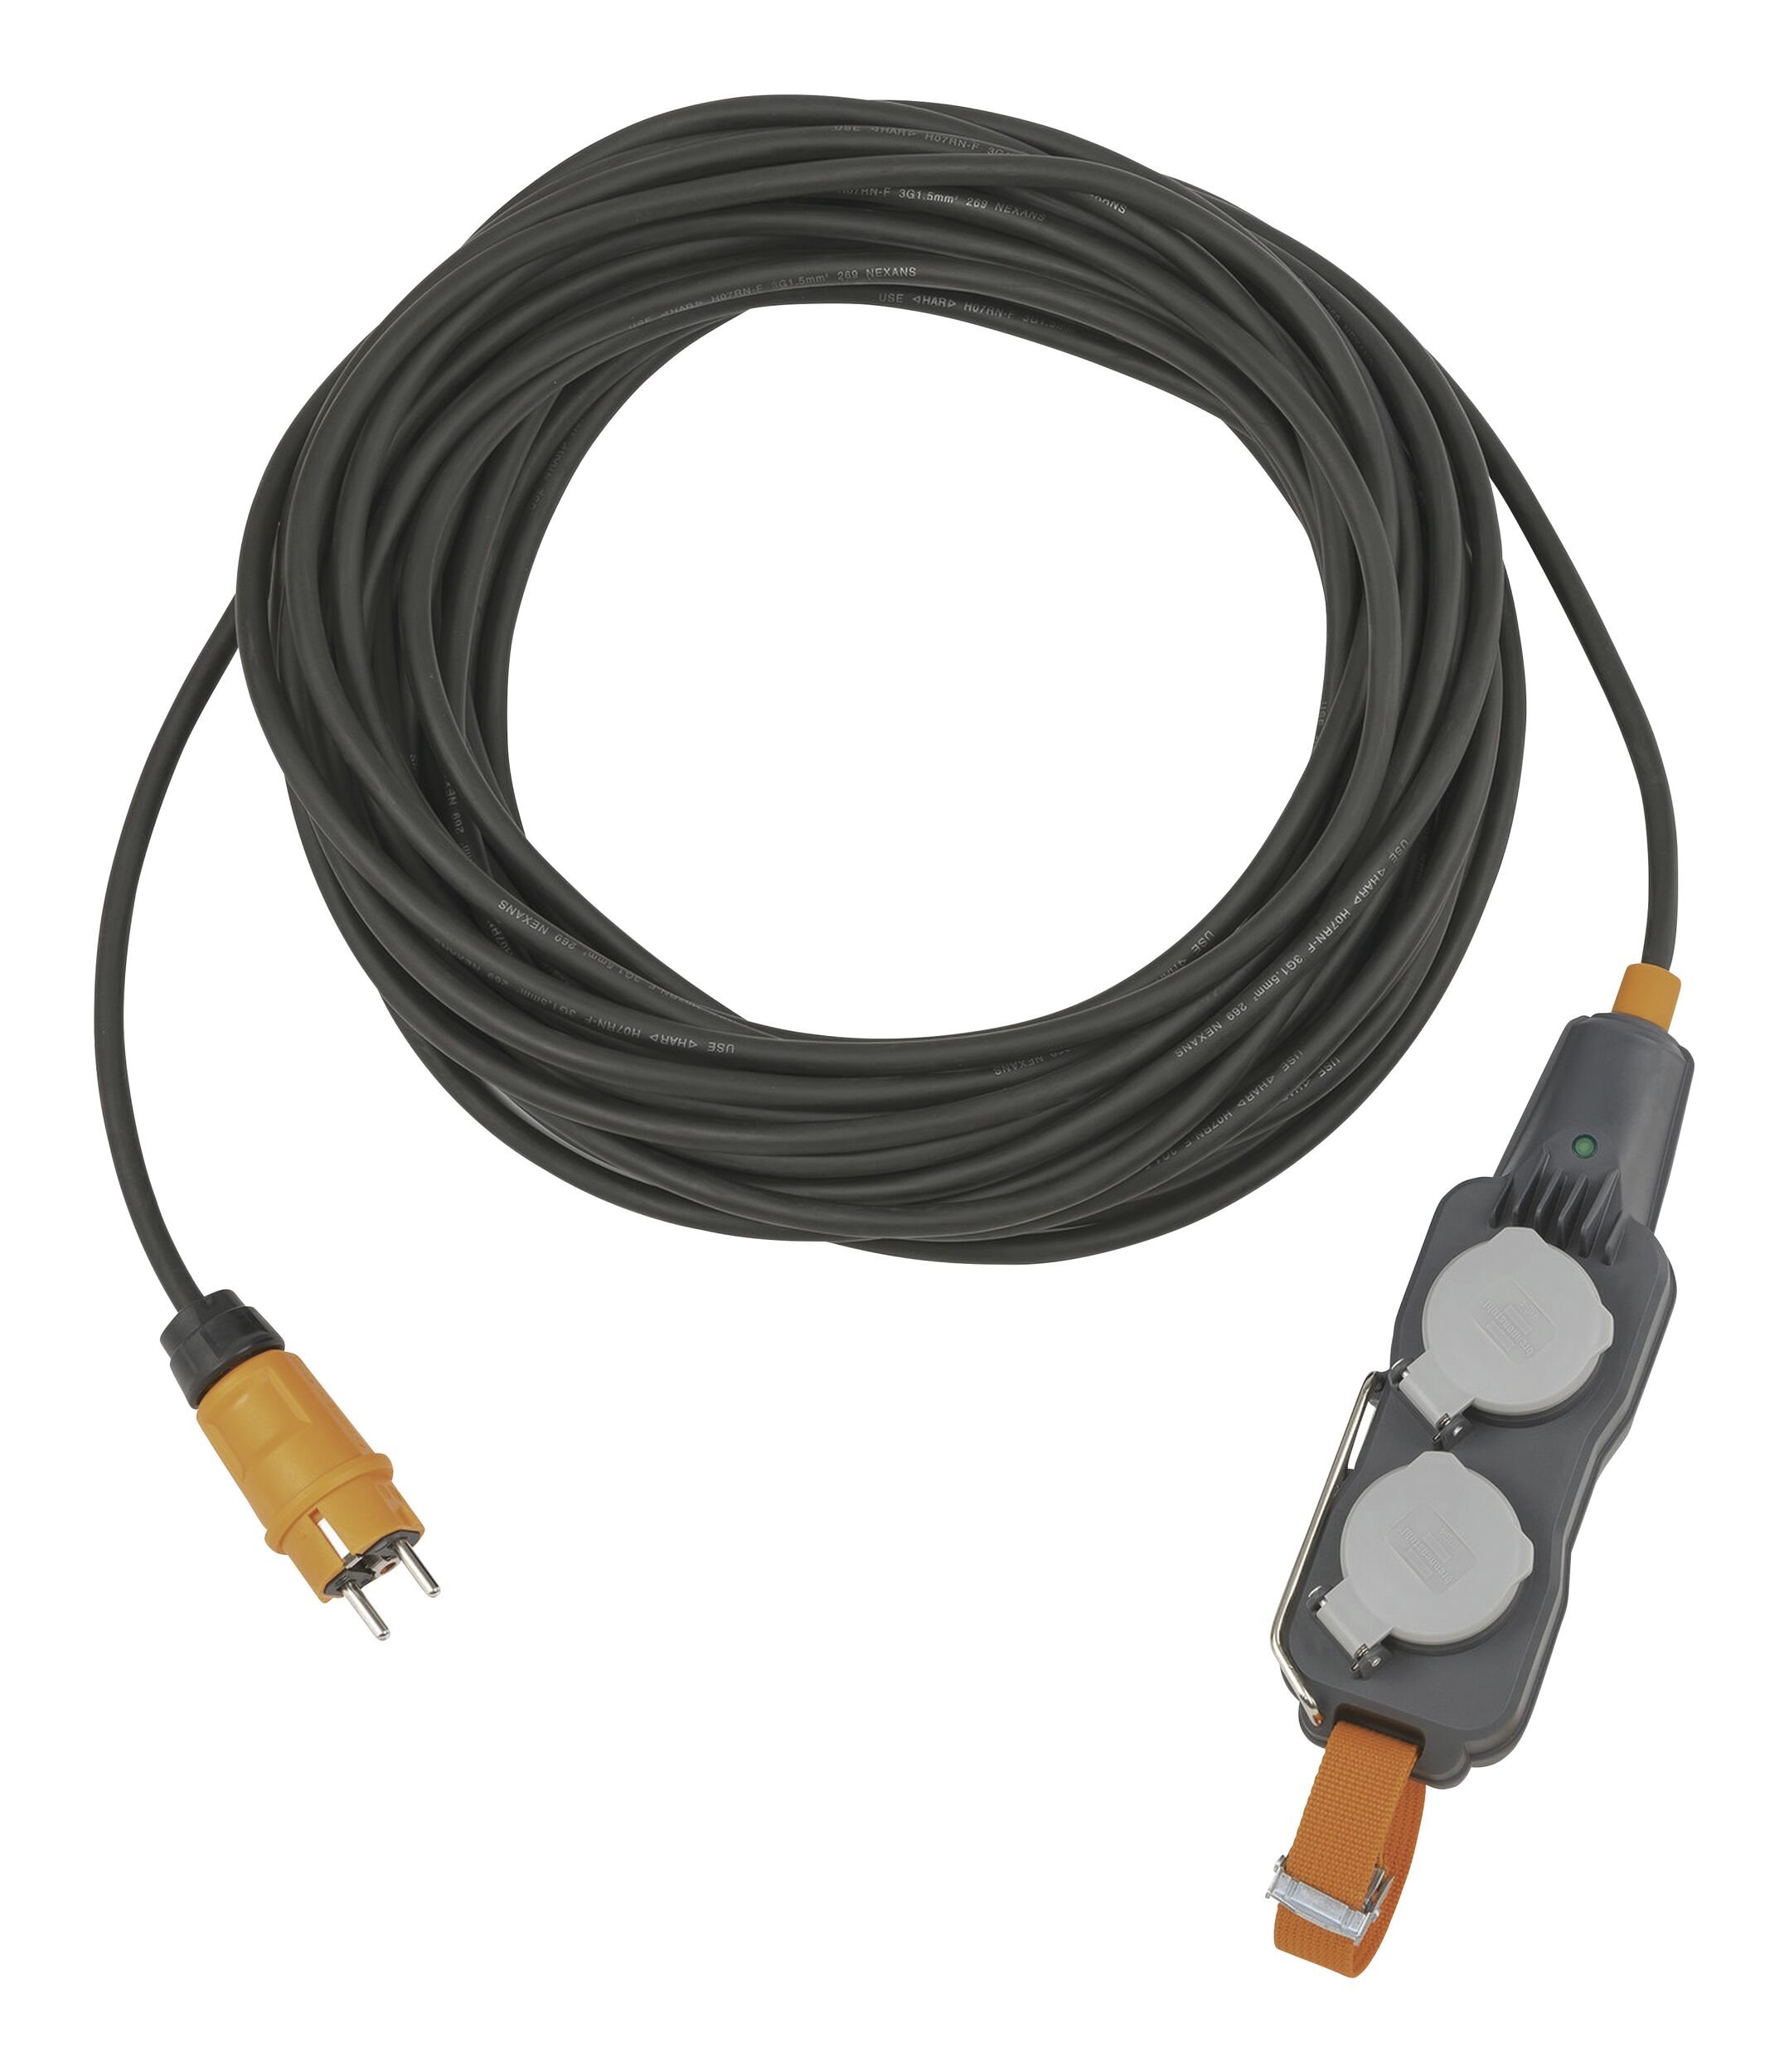 Adapterleitung (Gummi-Neopren), CEE-Stecker 400V/16A, CEE-Kupplung 230V/16A,  Kabel 1,5m H07RN-F 3G2,5 schwarz